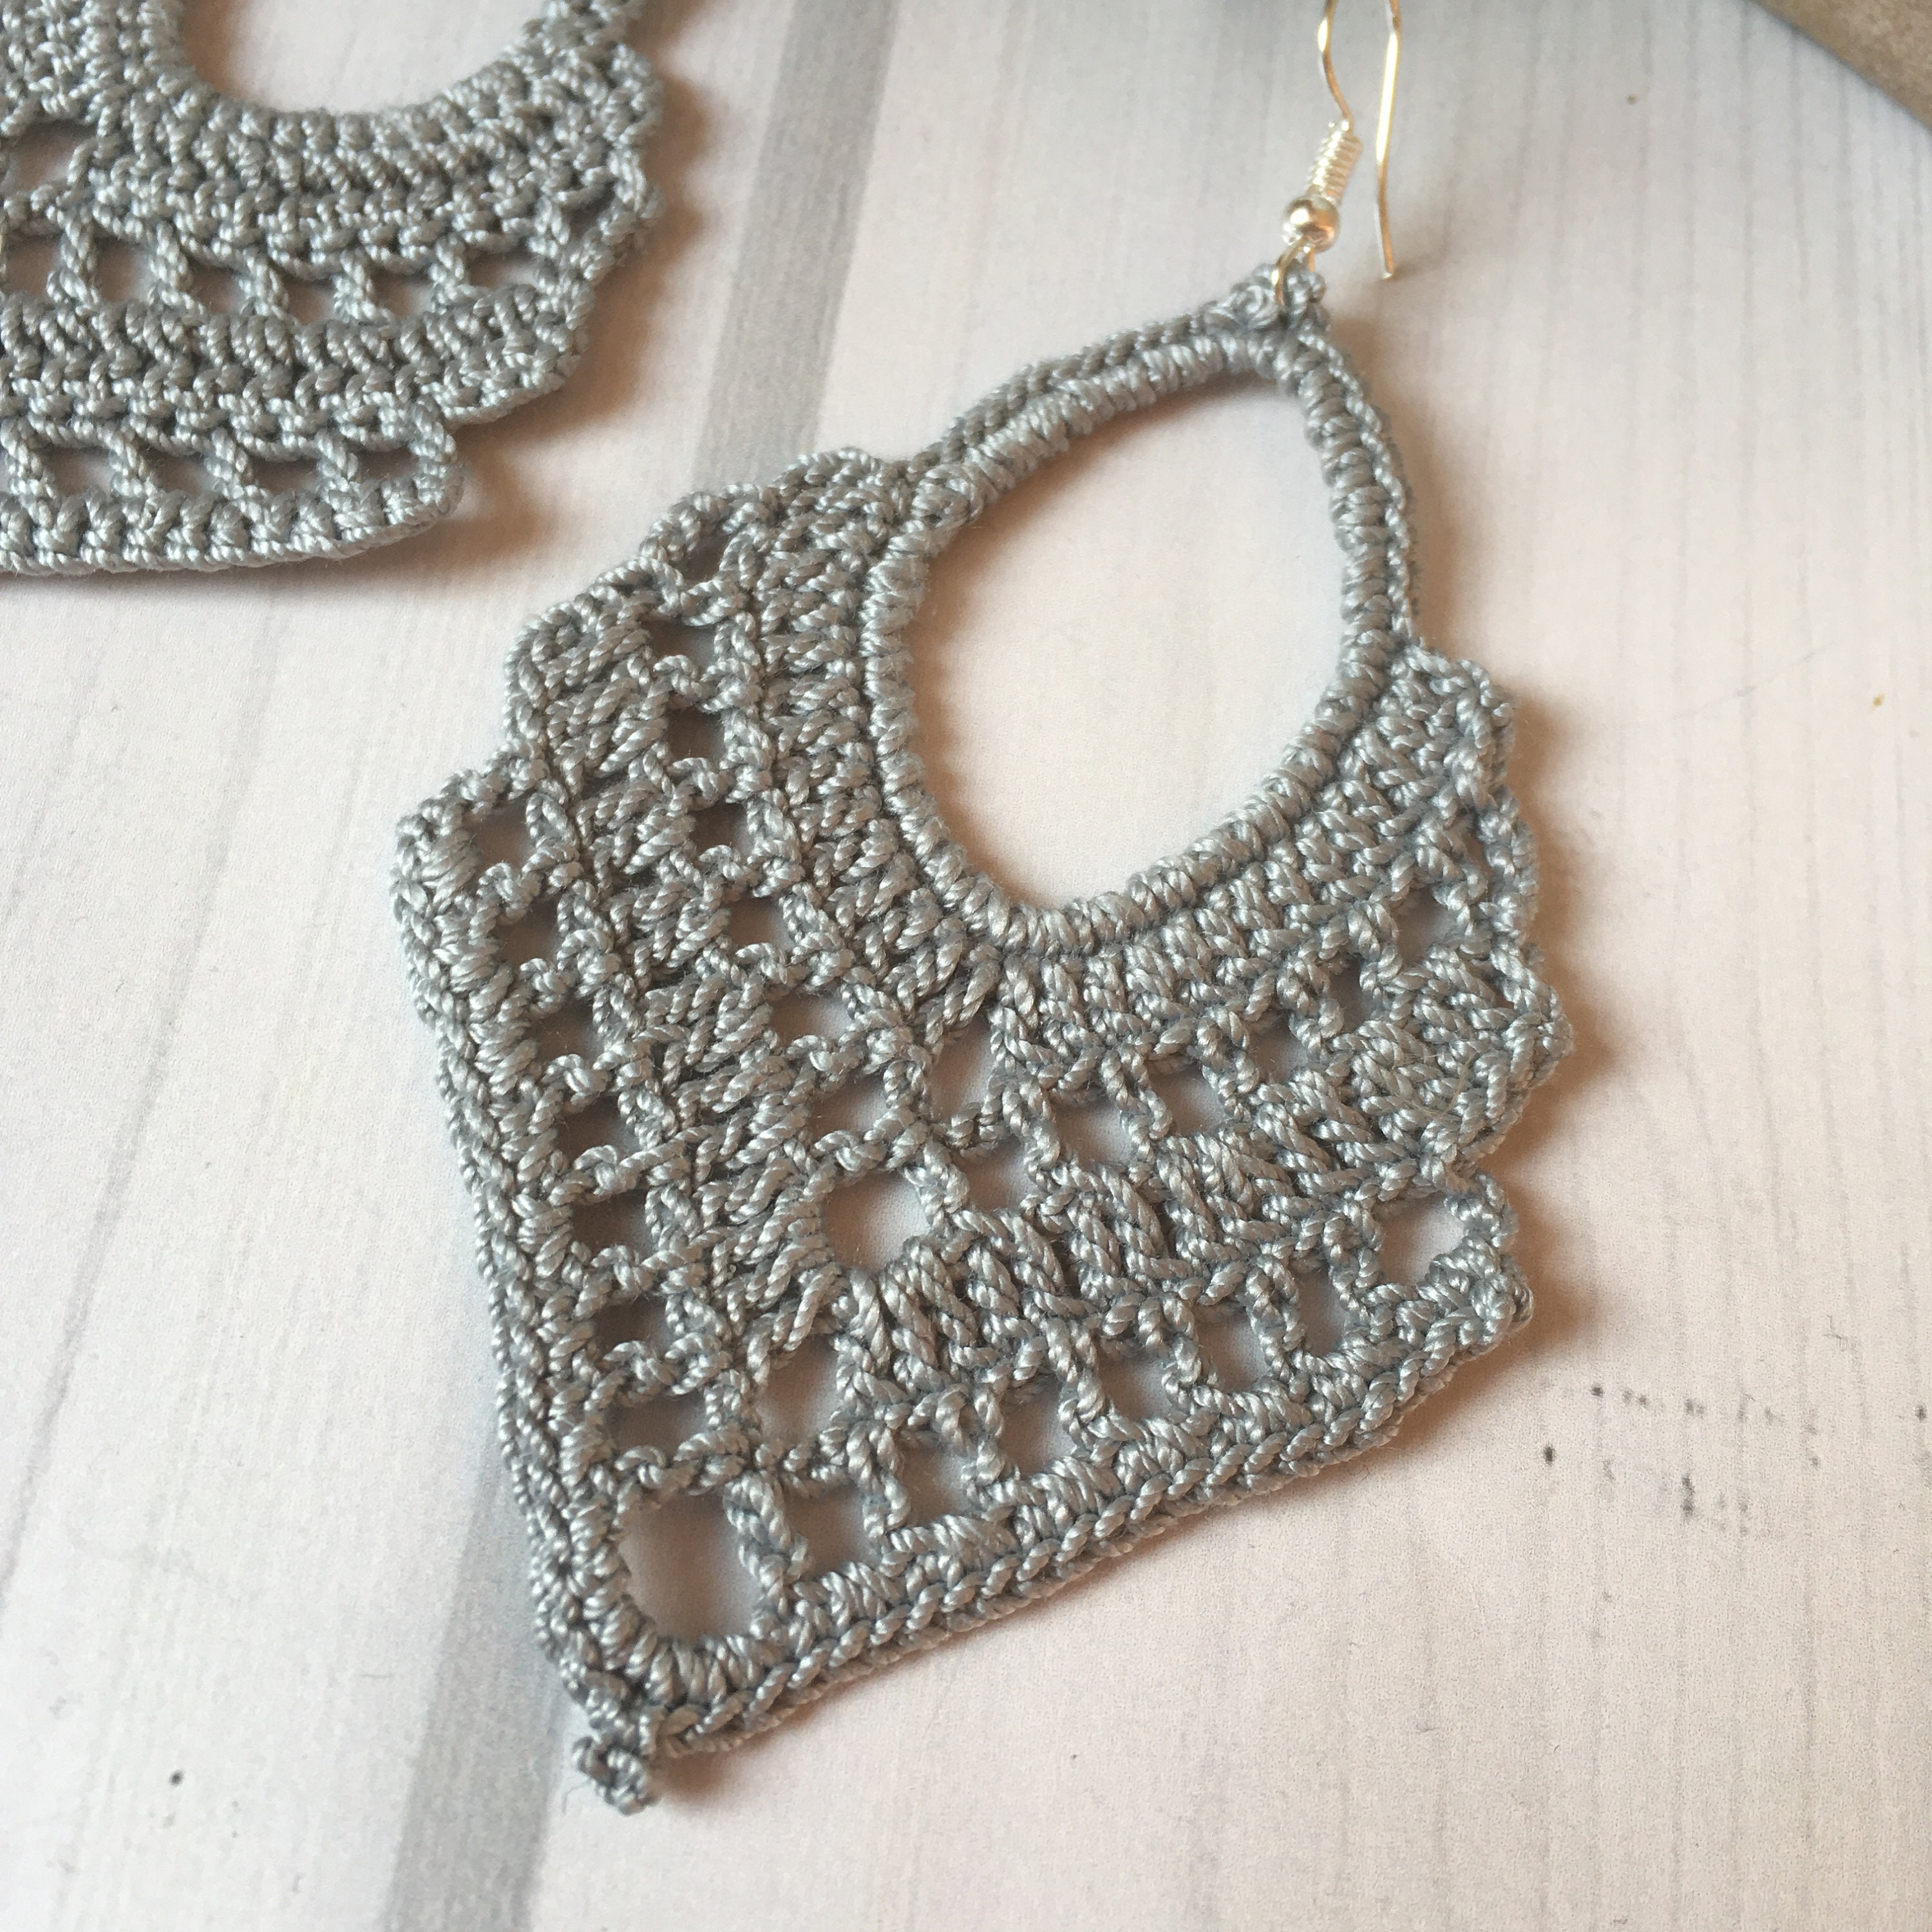 Crochet Earrings for Everyday Wear - Crochet 365 Knit Too